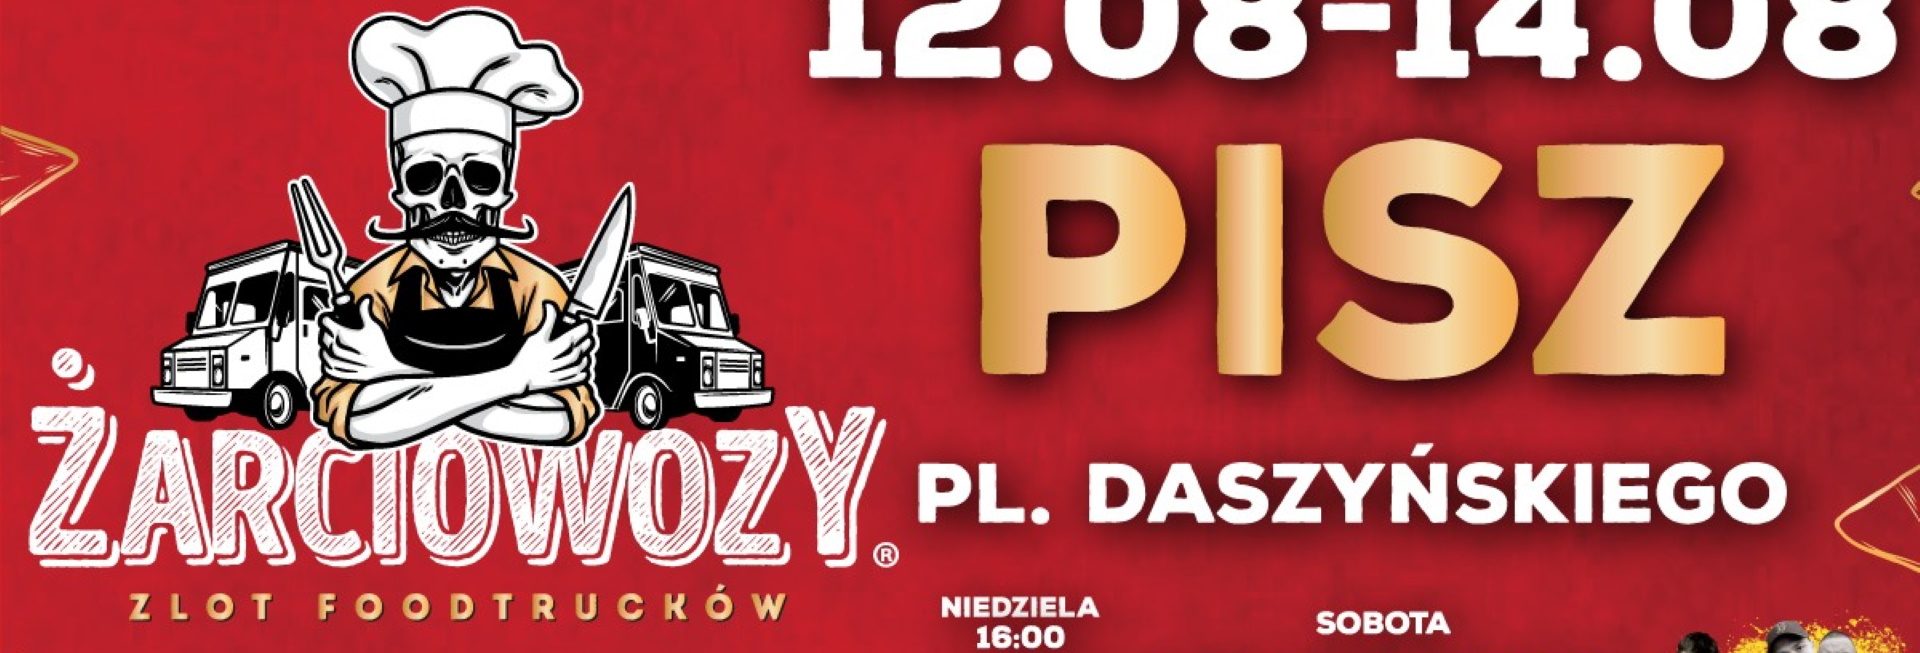 Plakat zapraszający do Pisza na Żarciowozy w Piszu 2022.